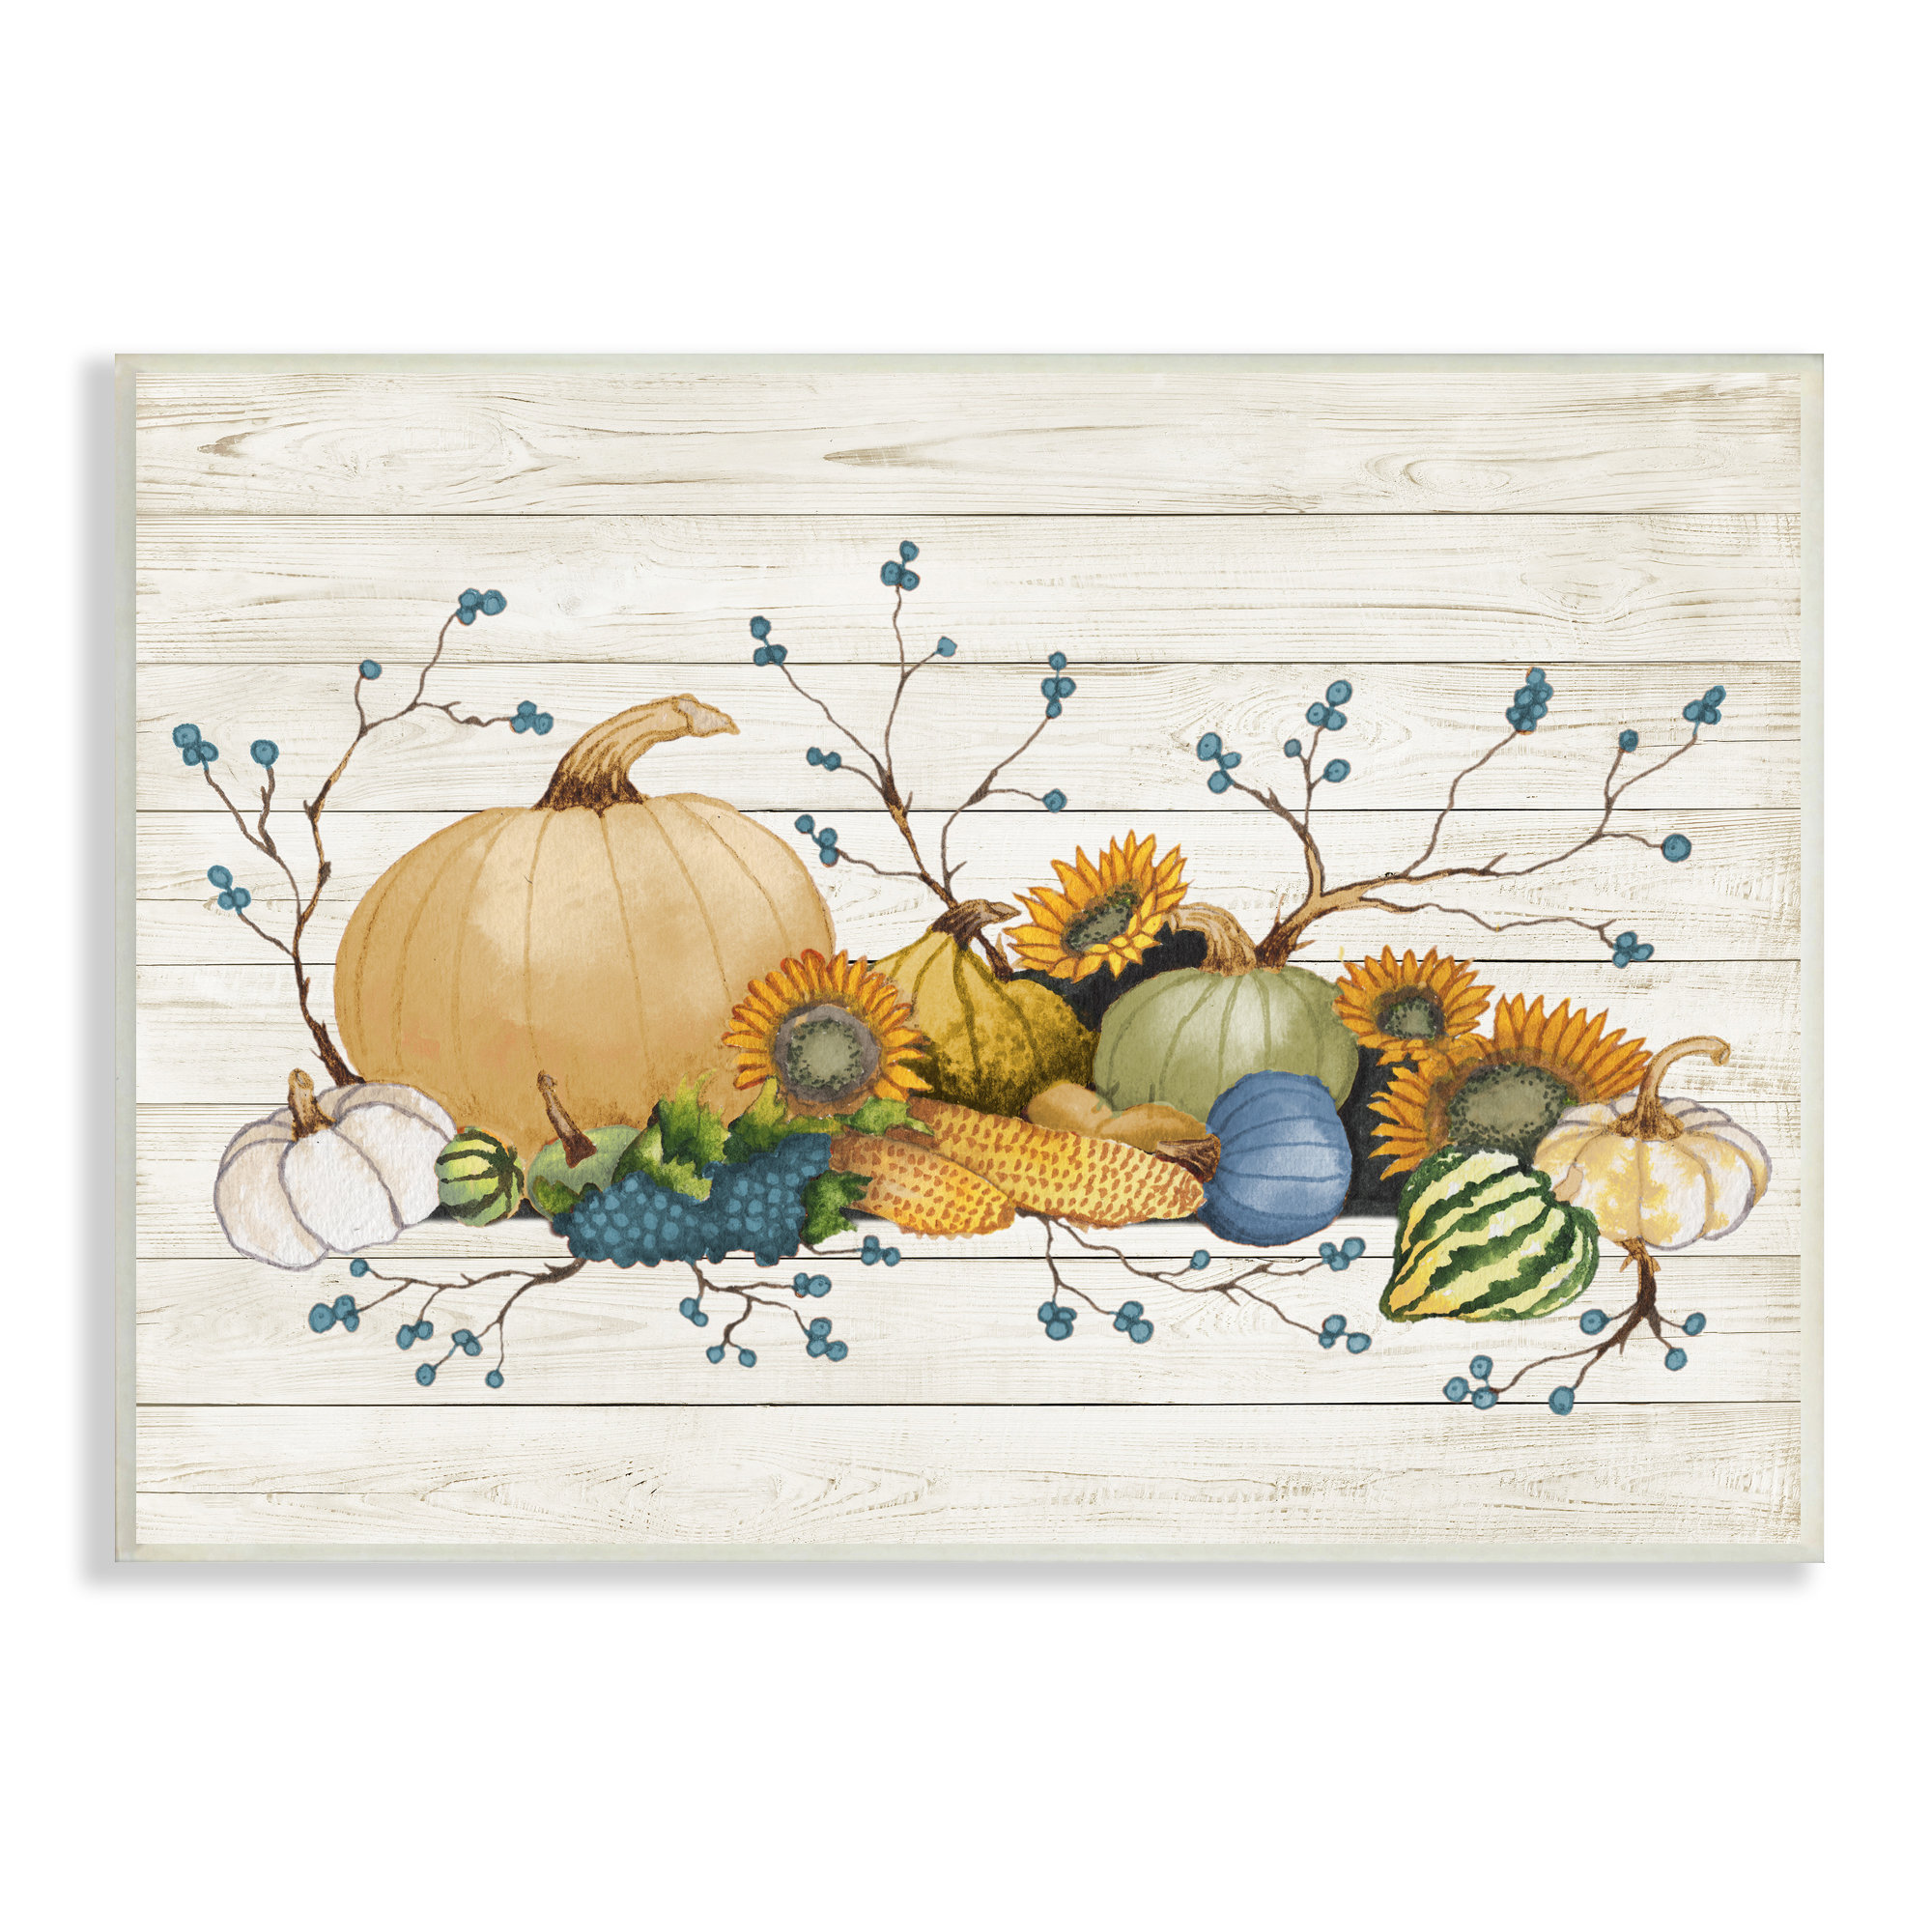 https://assets.wfcdn.com/im/05210486/compr-r85/2104/210491155/rustic-abundant-harvest-vegetables-fall-botanical-spread-by-elizabeth-medley-print.jpg